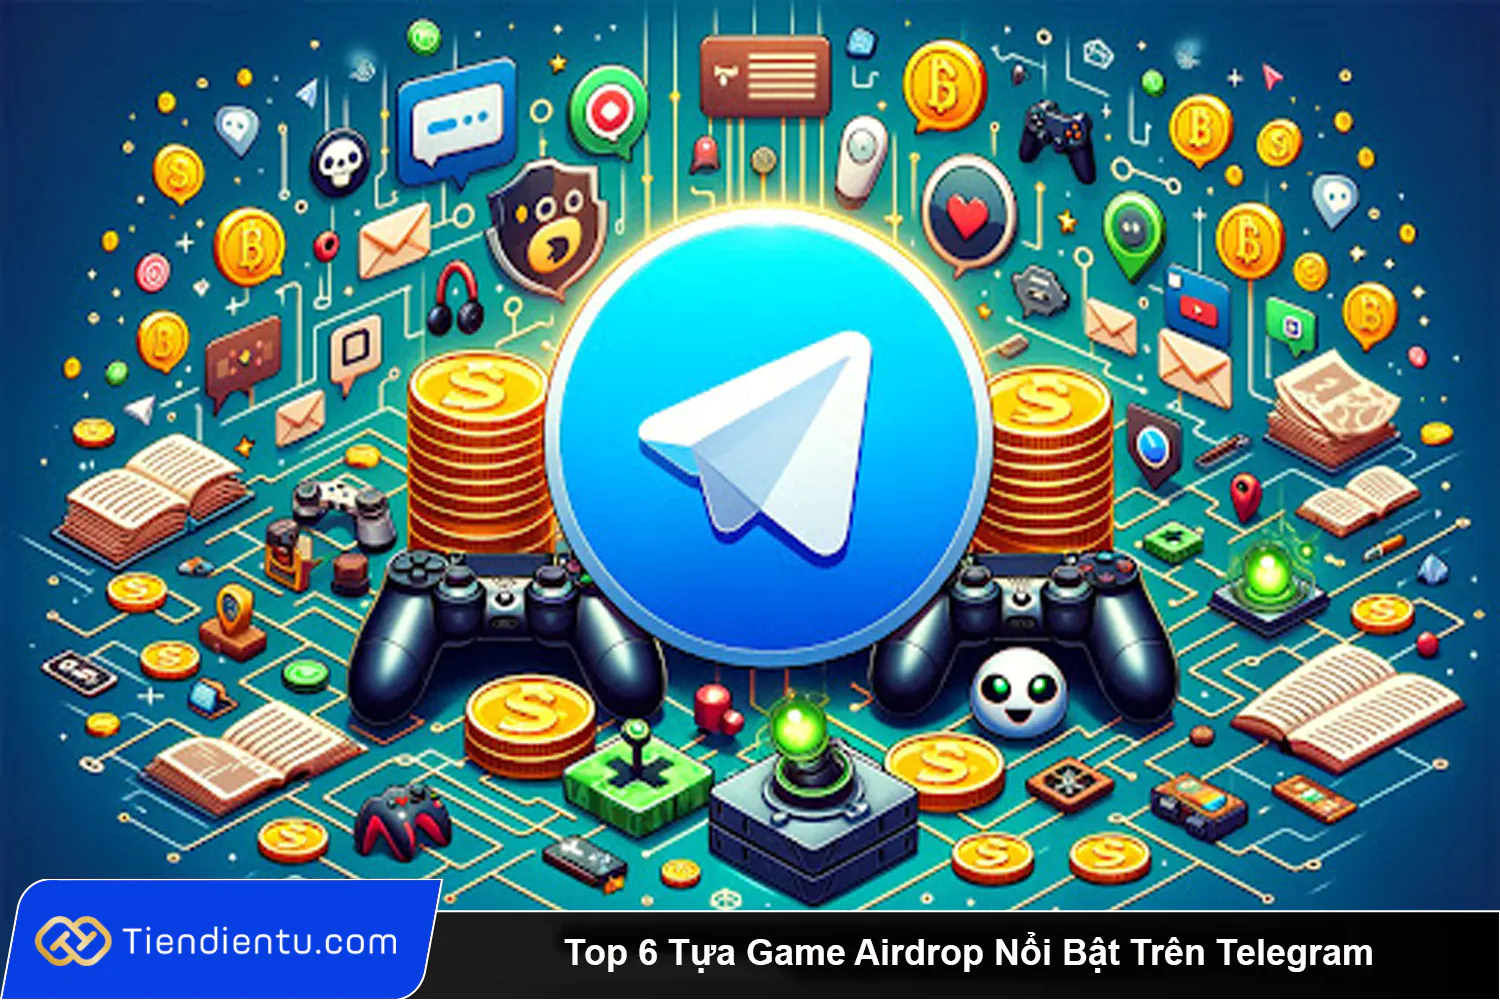 Top 6 Tua Game Airdrop Noi Bat Tren Telegram